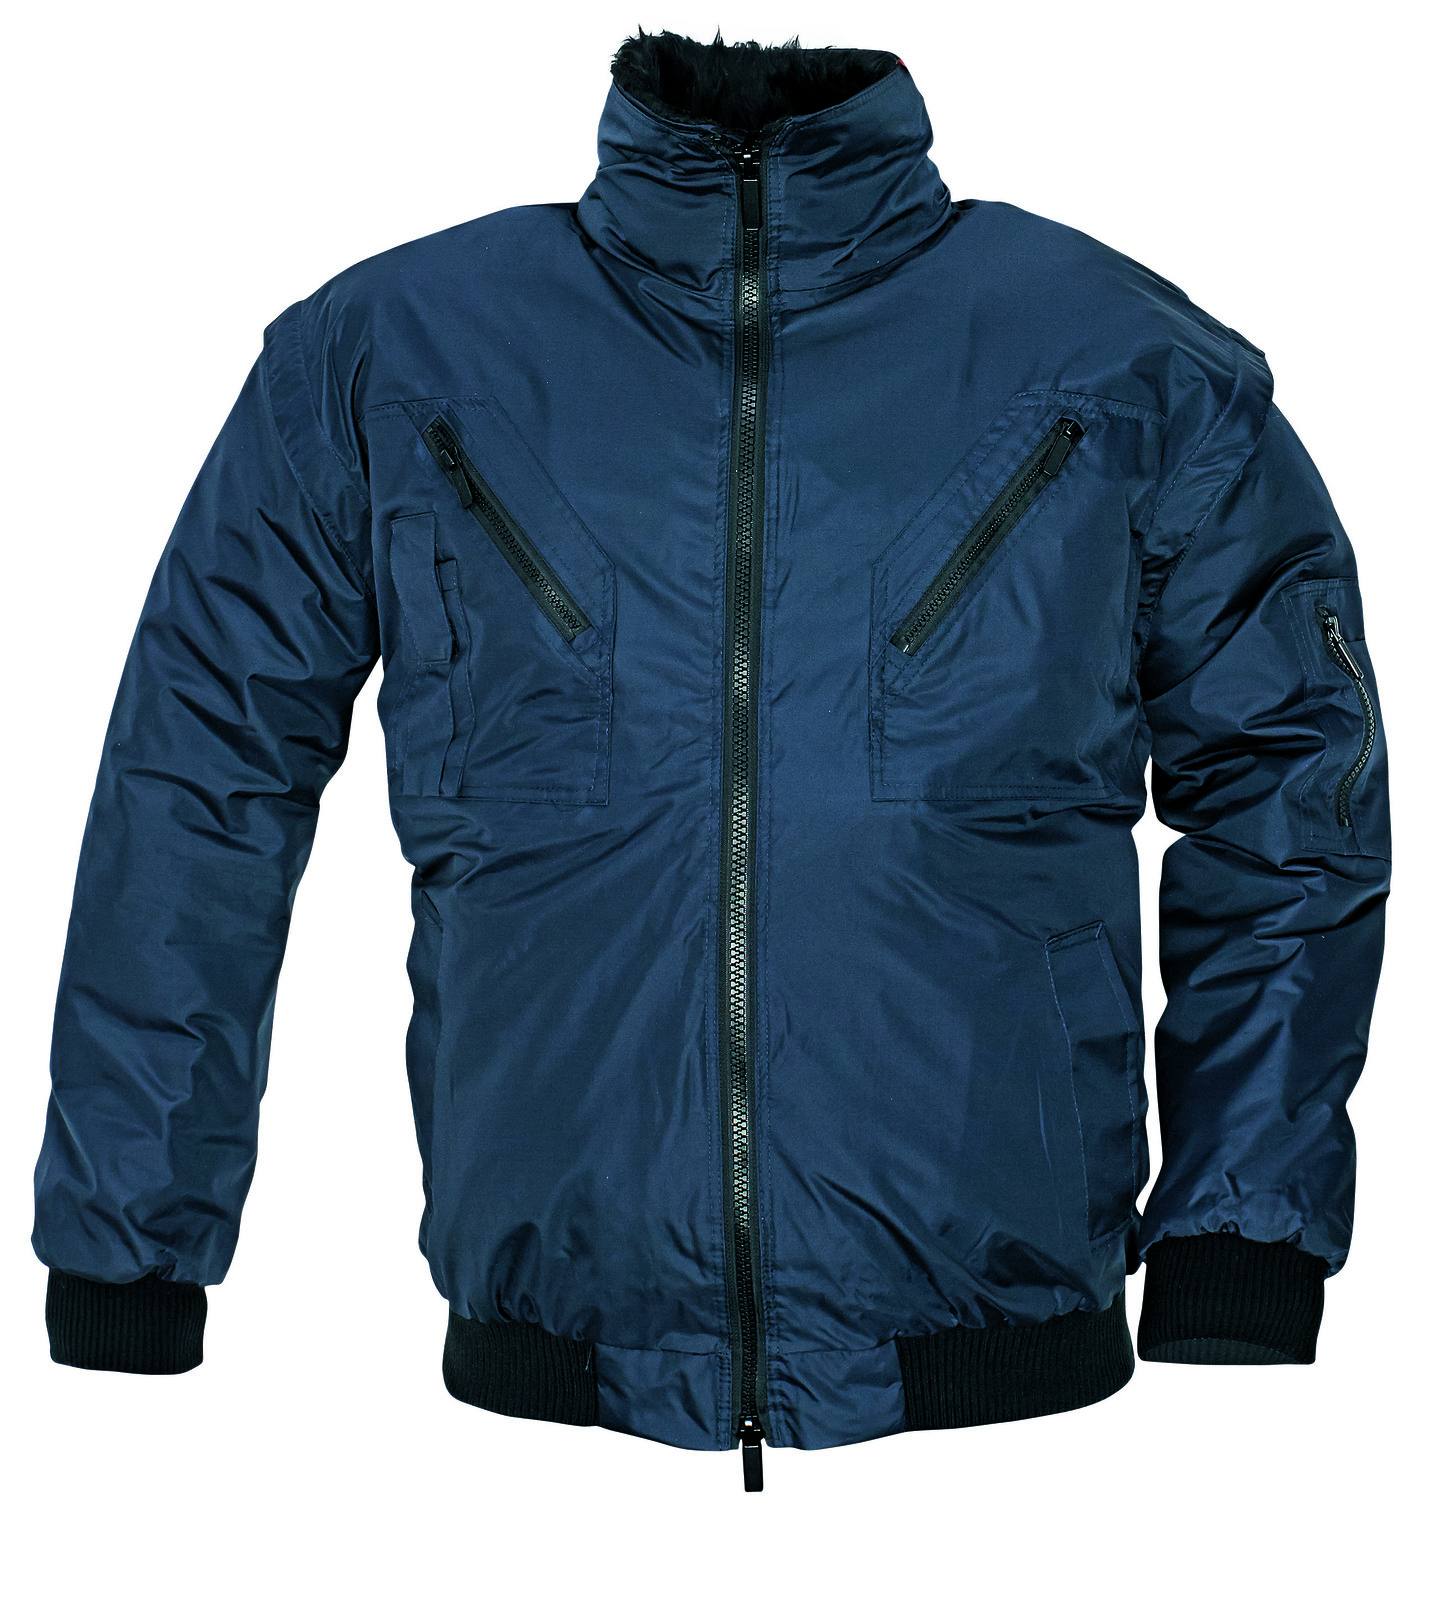 Zimná bunda a vesta Pilot 3v1 pánska - veľkosť: M, farba: navy